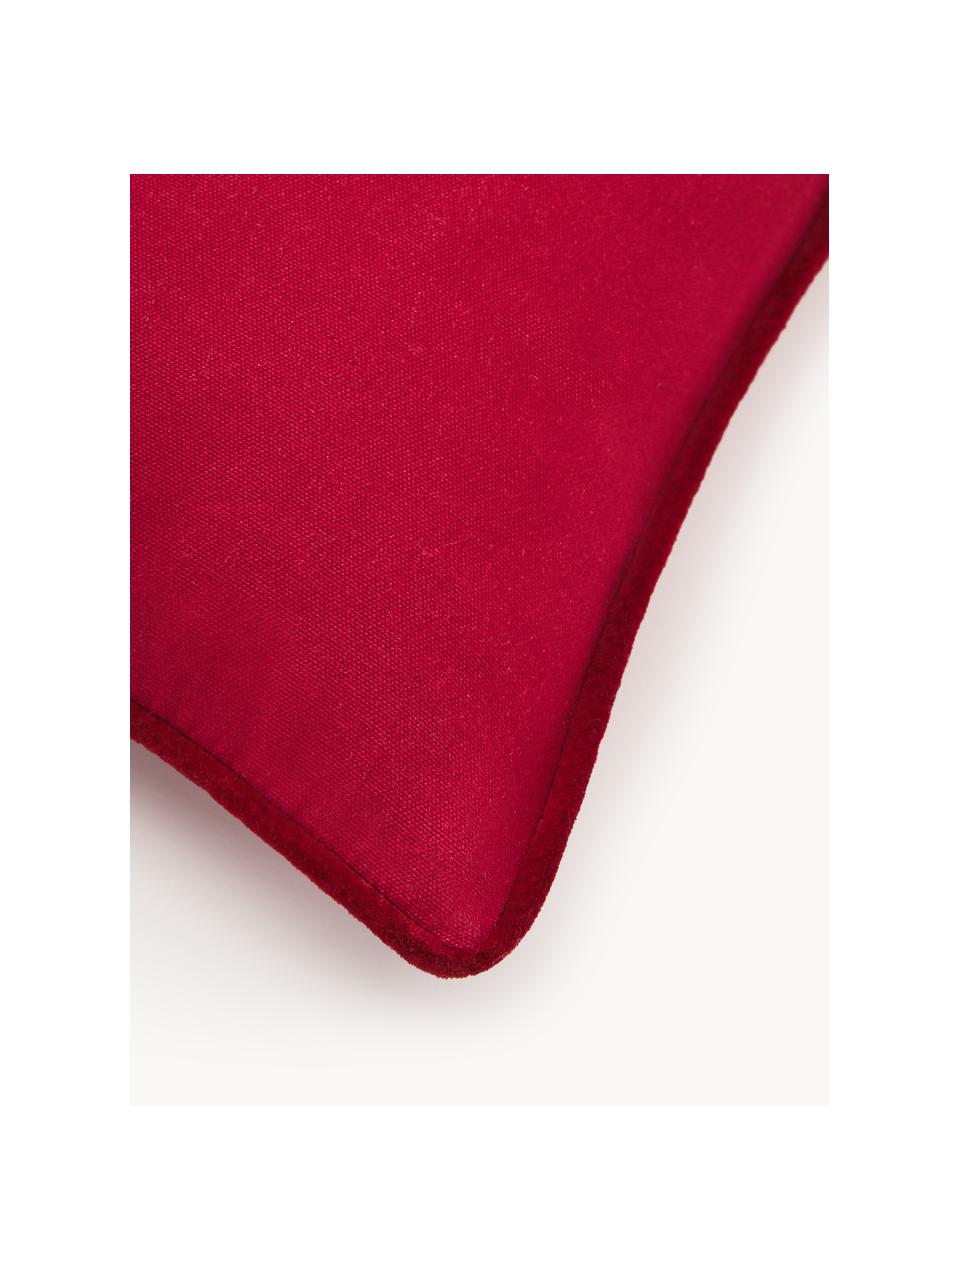 Copricuscino con motivo invernale Prancer, Rivestimento: 100% cotone, Rosso, bianco, Larg. 45 x Lung. 45 cm